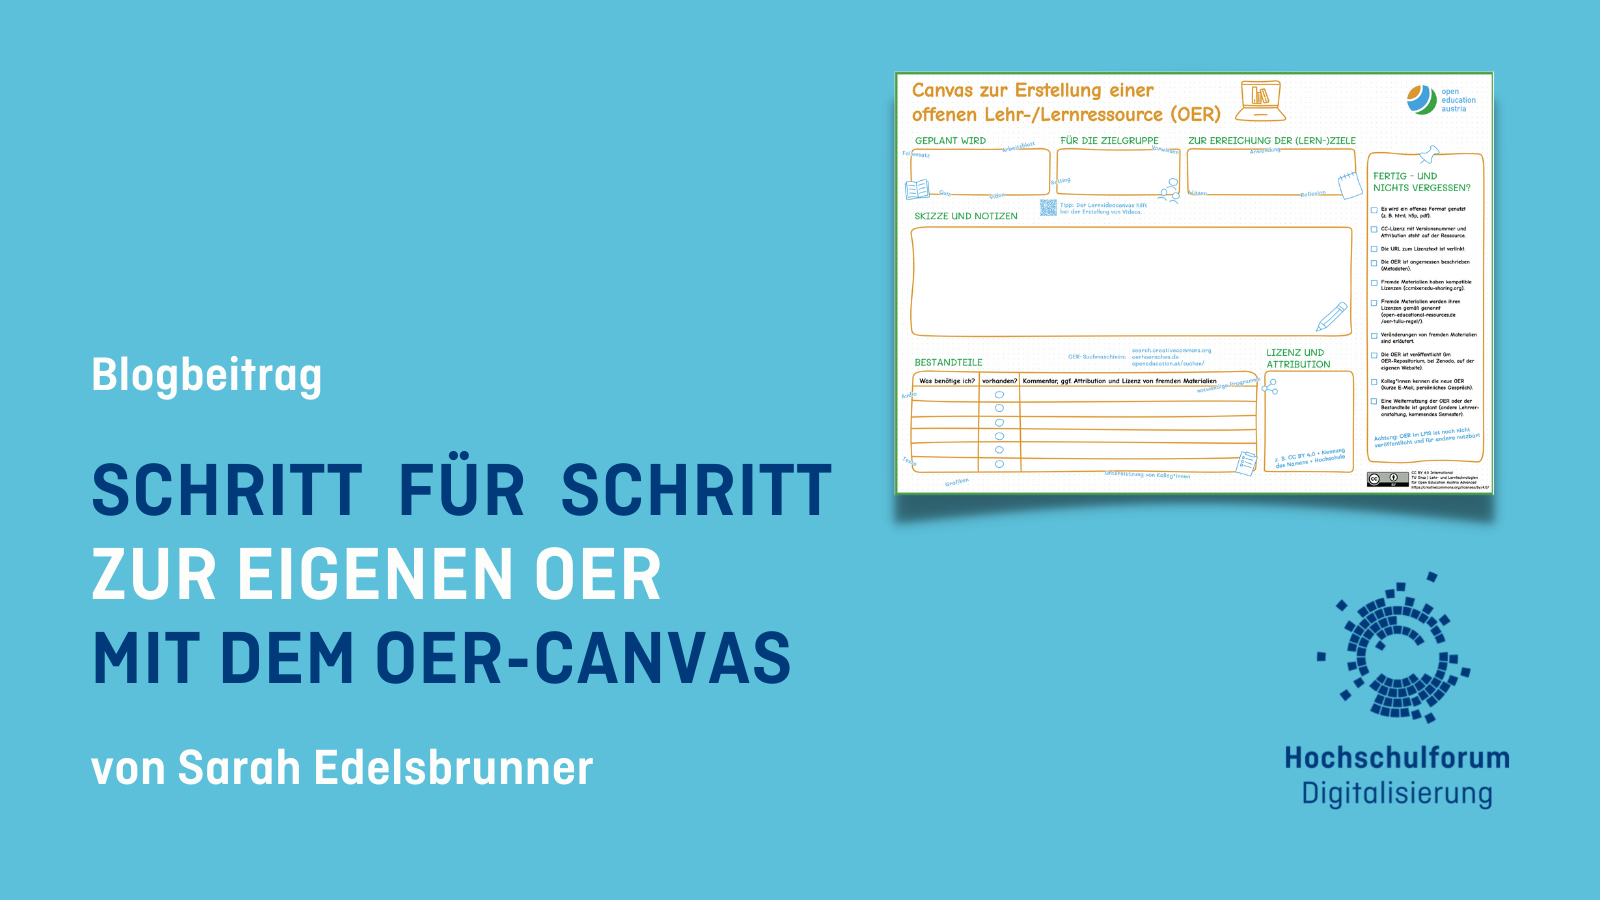 Text: Schritt für Schritt zur eigenen OER mit dem OER-Canvas; Bild: ein OER-Canvas auf Deutsch auf blauem Grund